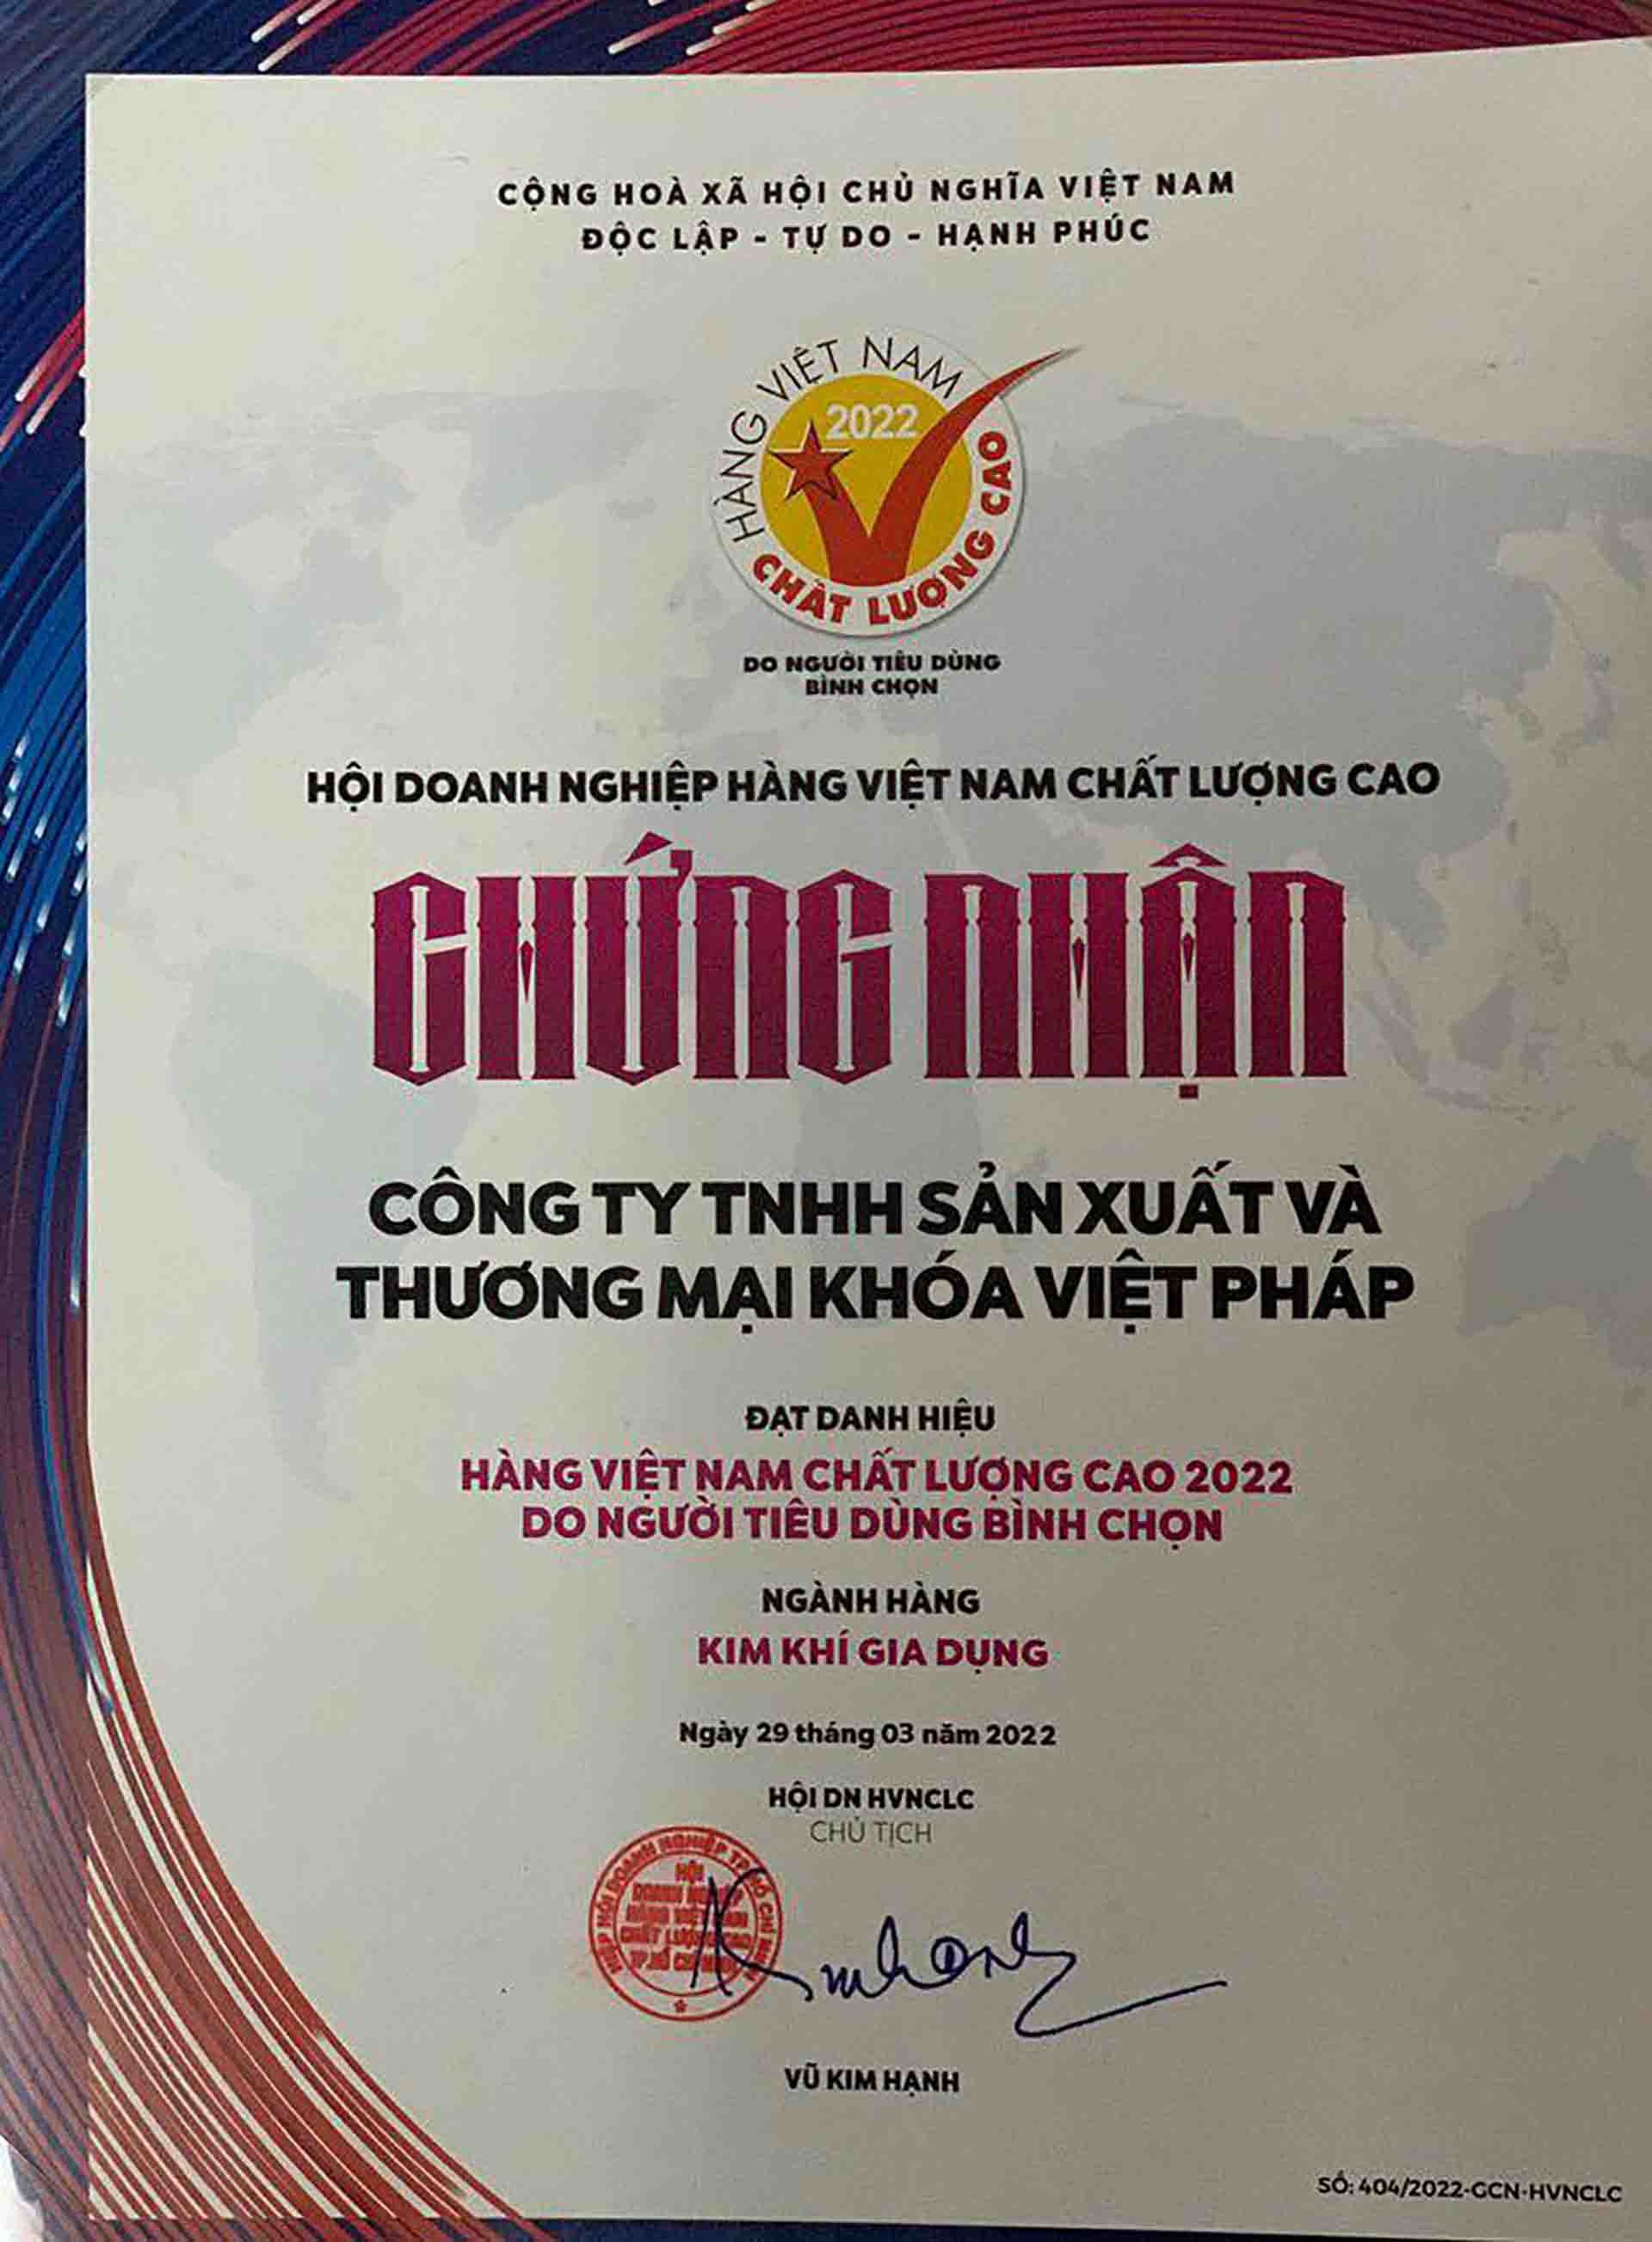 Công ty TNHH sản xuất và thương mại khóa Việt Pháp được trao bằng chứng nhận hàng Việt Nam chất lượng cao 2022 do người tiêu dùng bình chọn trong ngành hàng kim khí gia dụng.